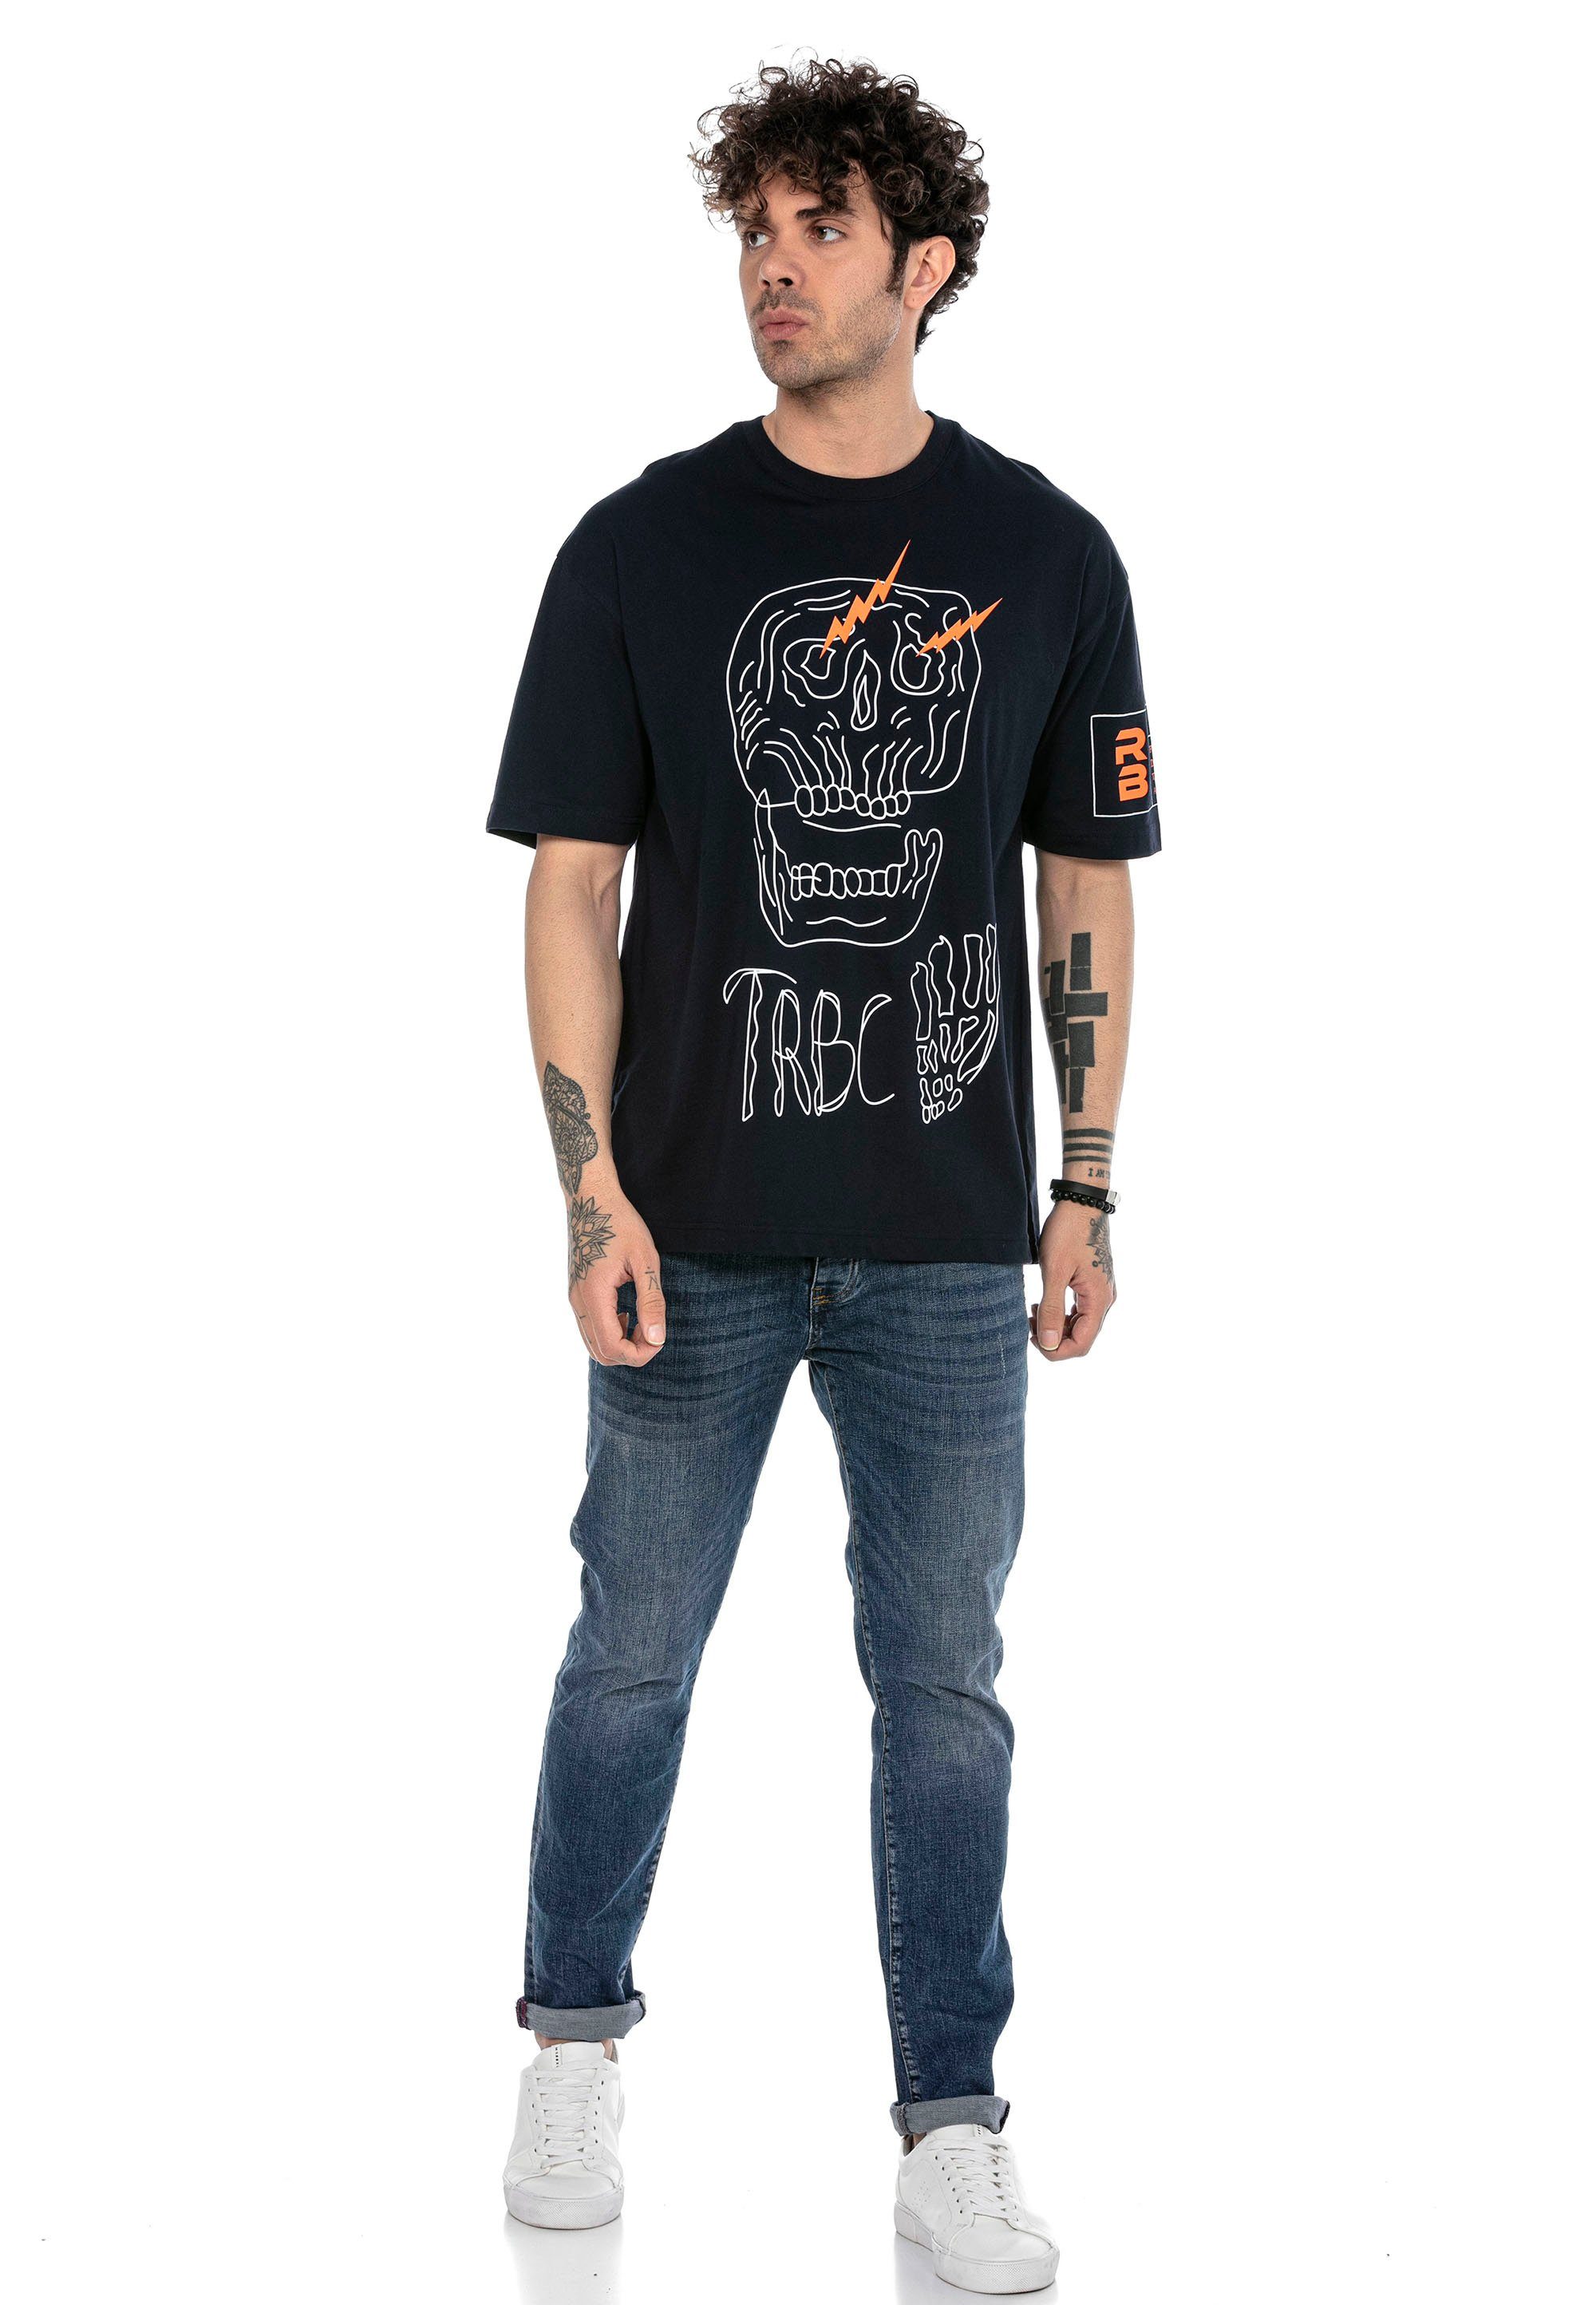 Totenkopf-Print T-Shirt dunkelblau stylischem RedBridge mit McAllen